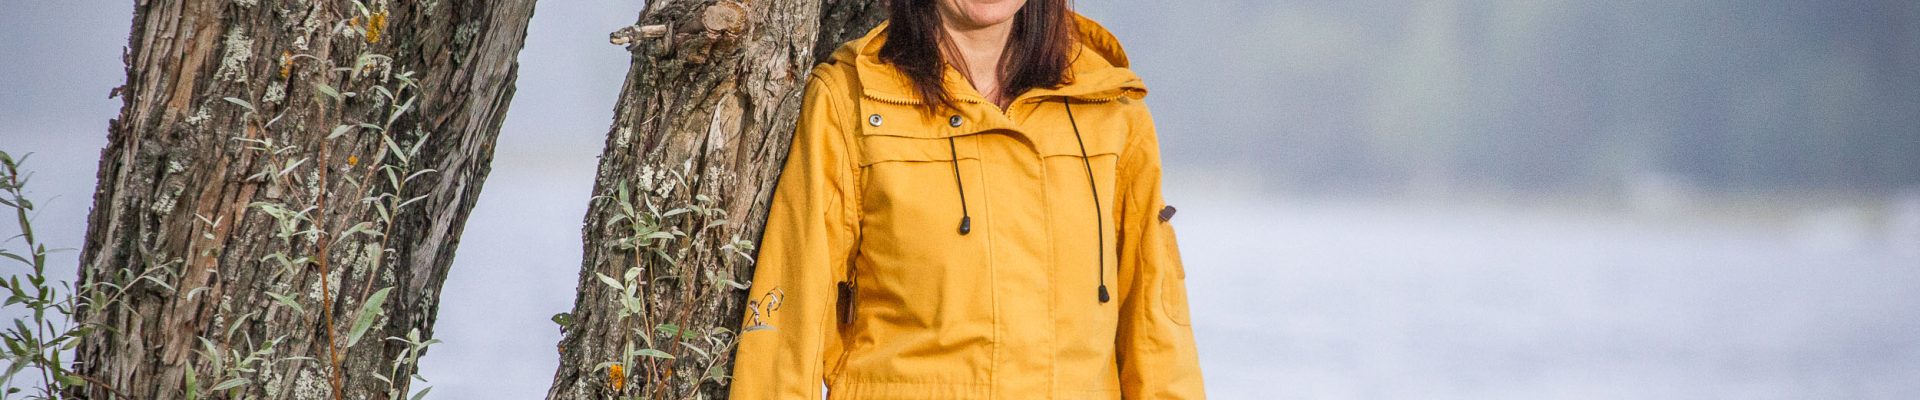 Henkilö keltaisessa takissa järven rannalla puun vieressä